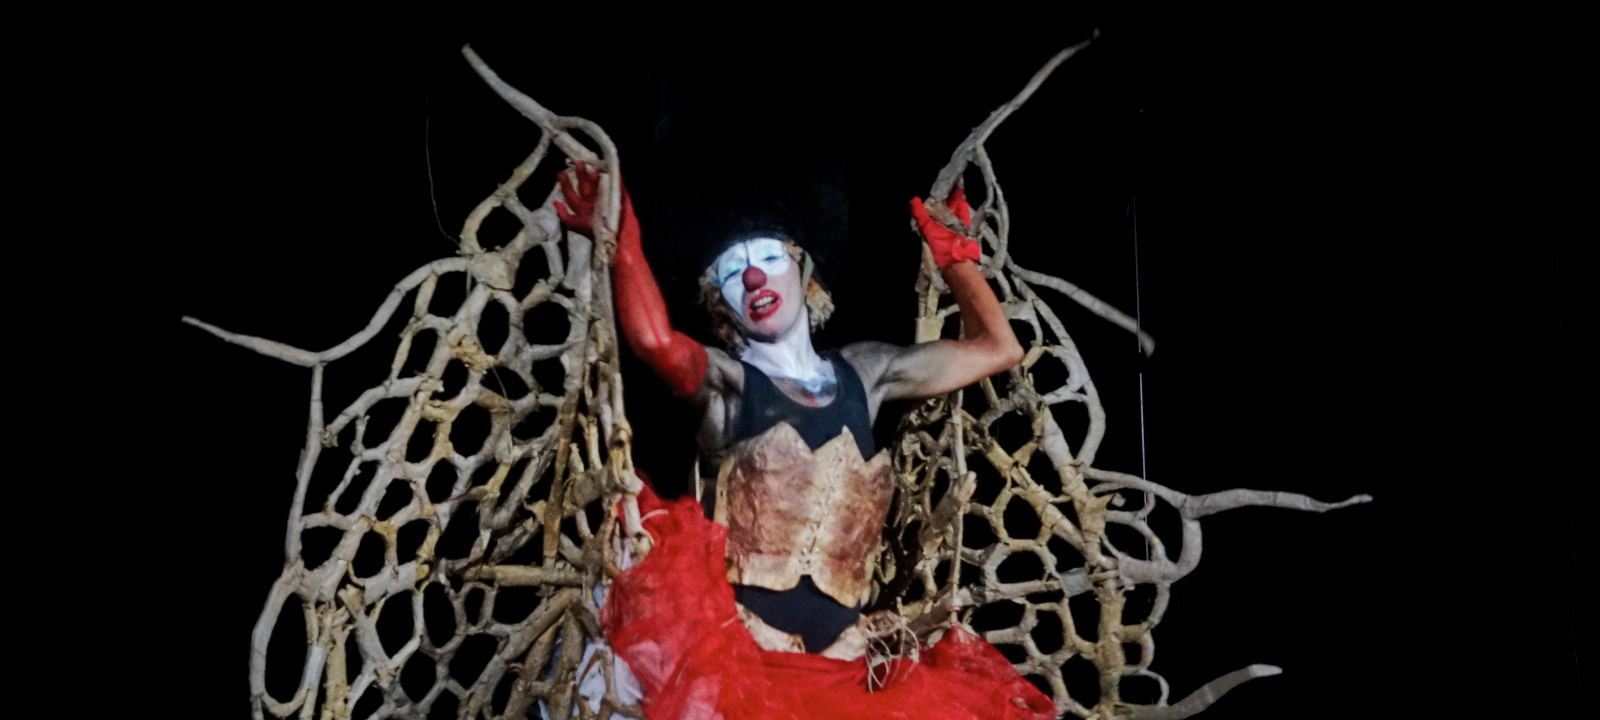 Chair à poème, solo clown bouffon de et par Barbara Gay, alias Pouk Personne. Crédit photo : Flora Ledoux.